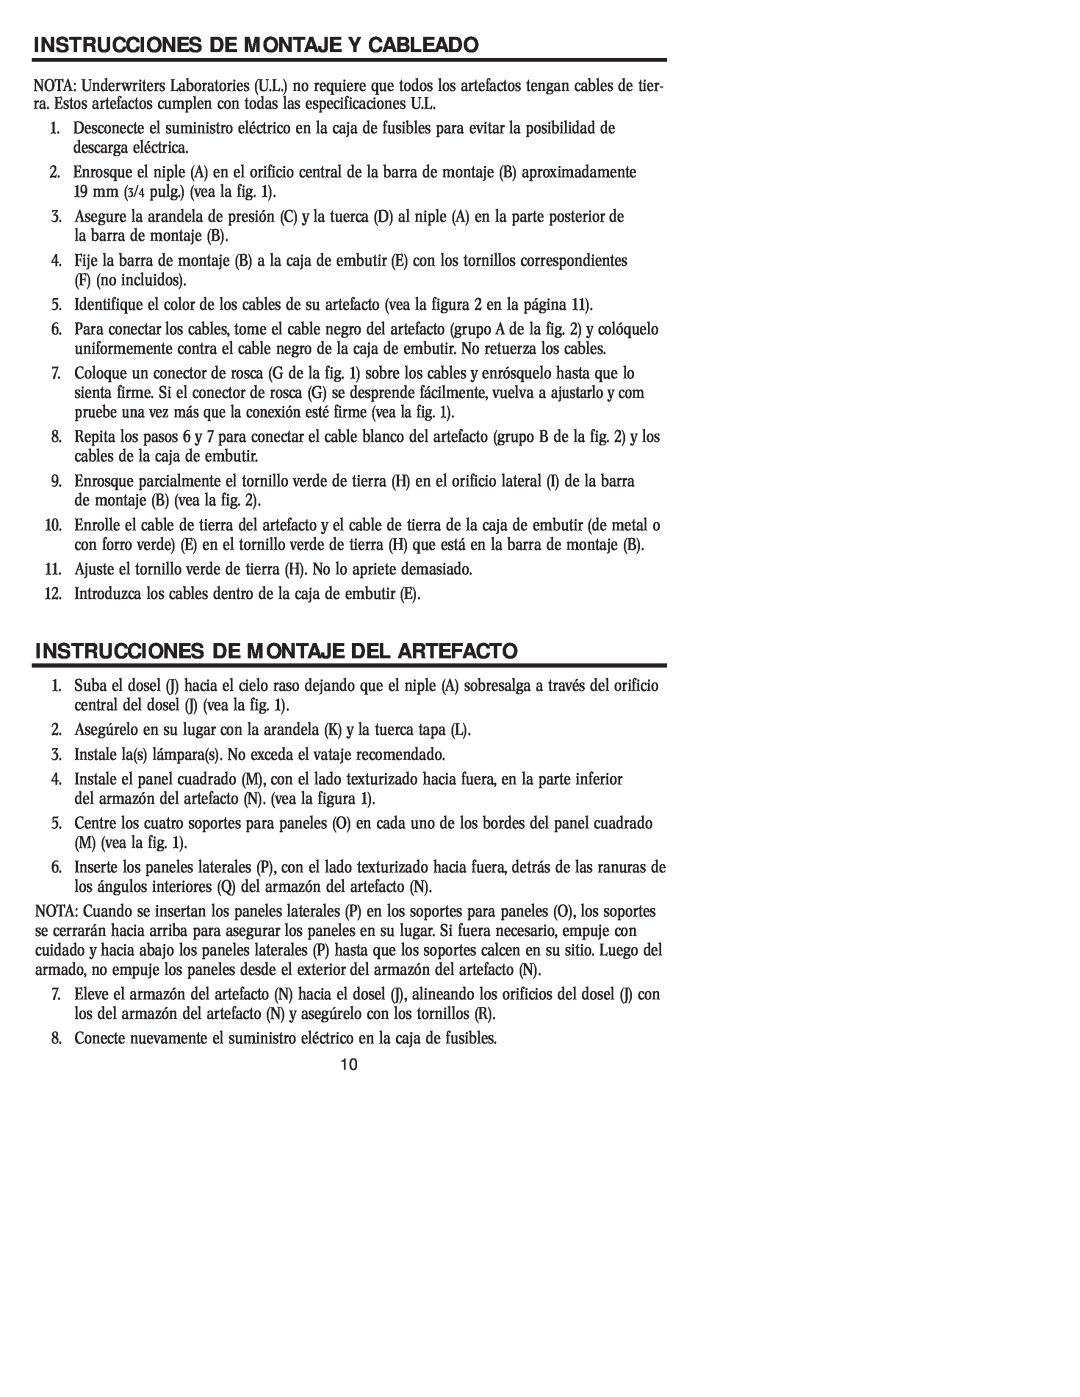 Westinghouse 20204 owner manual Instrucciones De Montaje Y Cableado, Instrucciones De Montaje Del Artefacto 